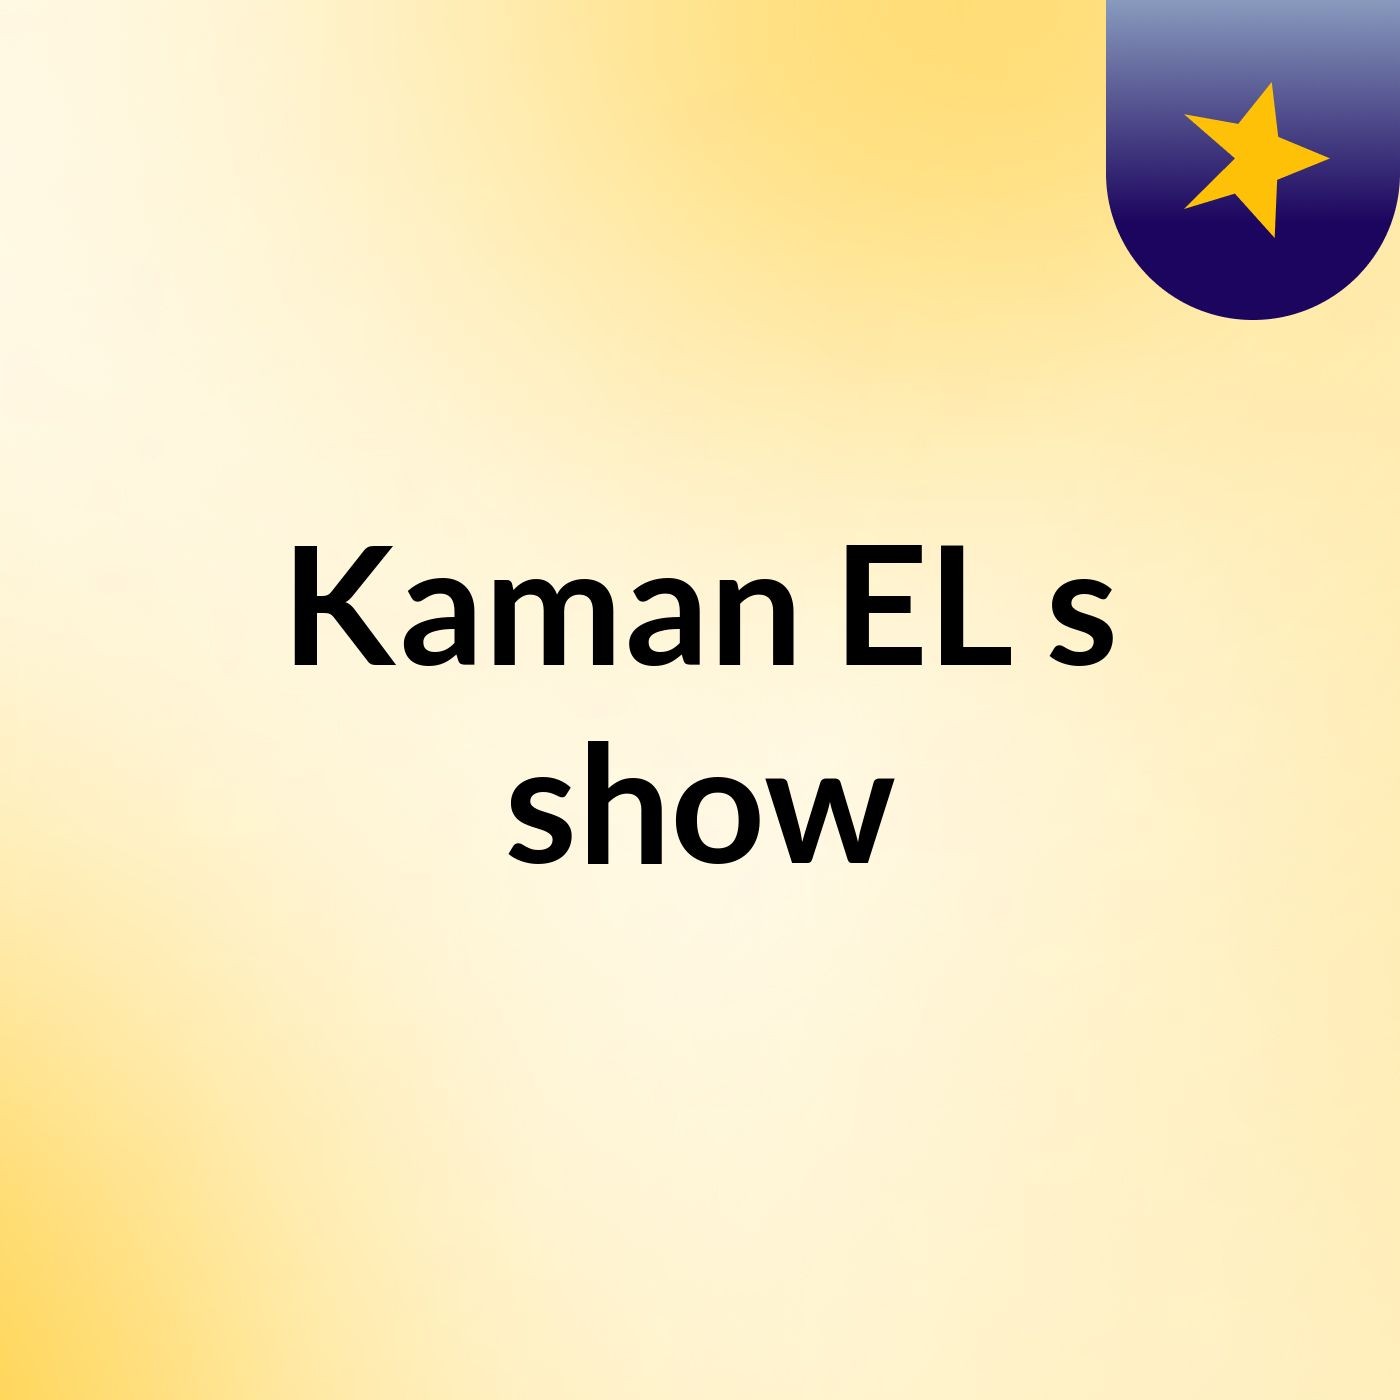 Kaman EL's show